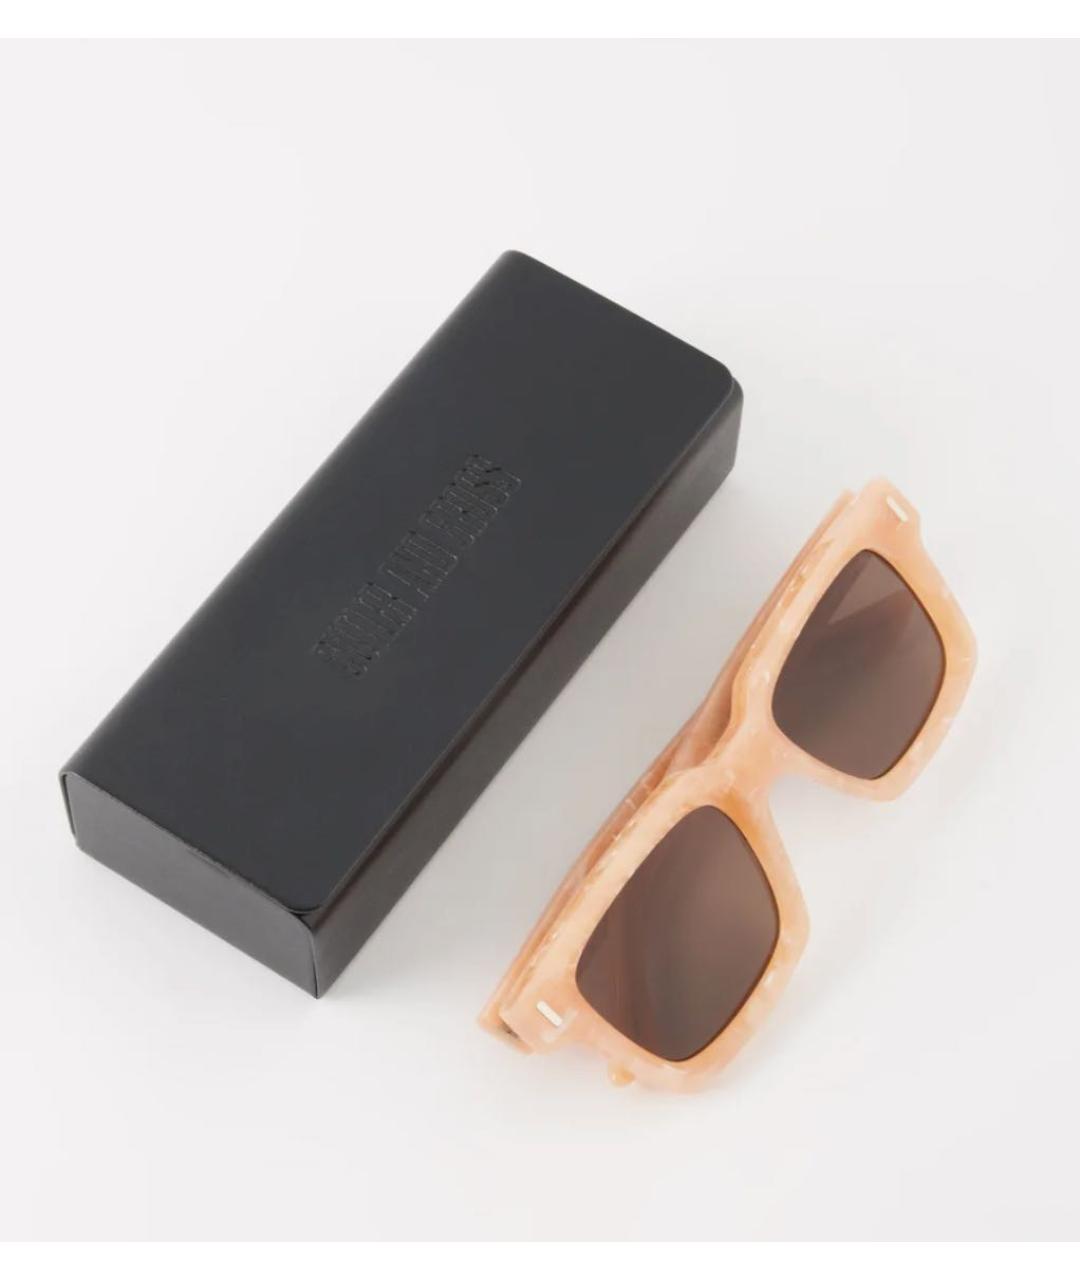 CUTLER & GROSS Коричневые солнцезащитные очки, фото 3